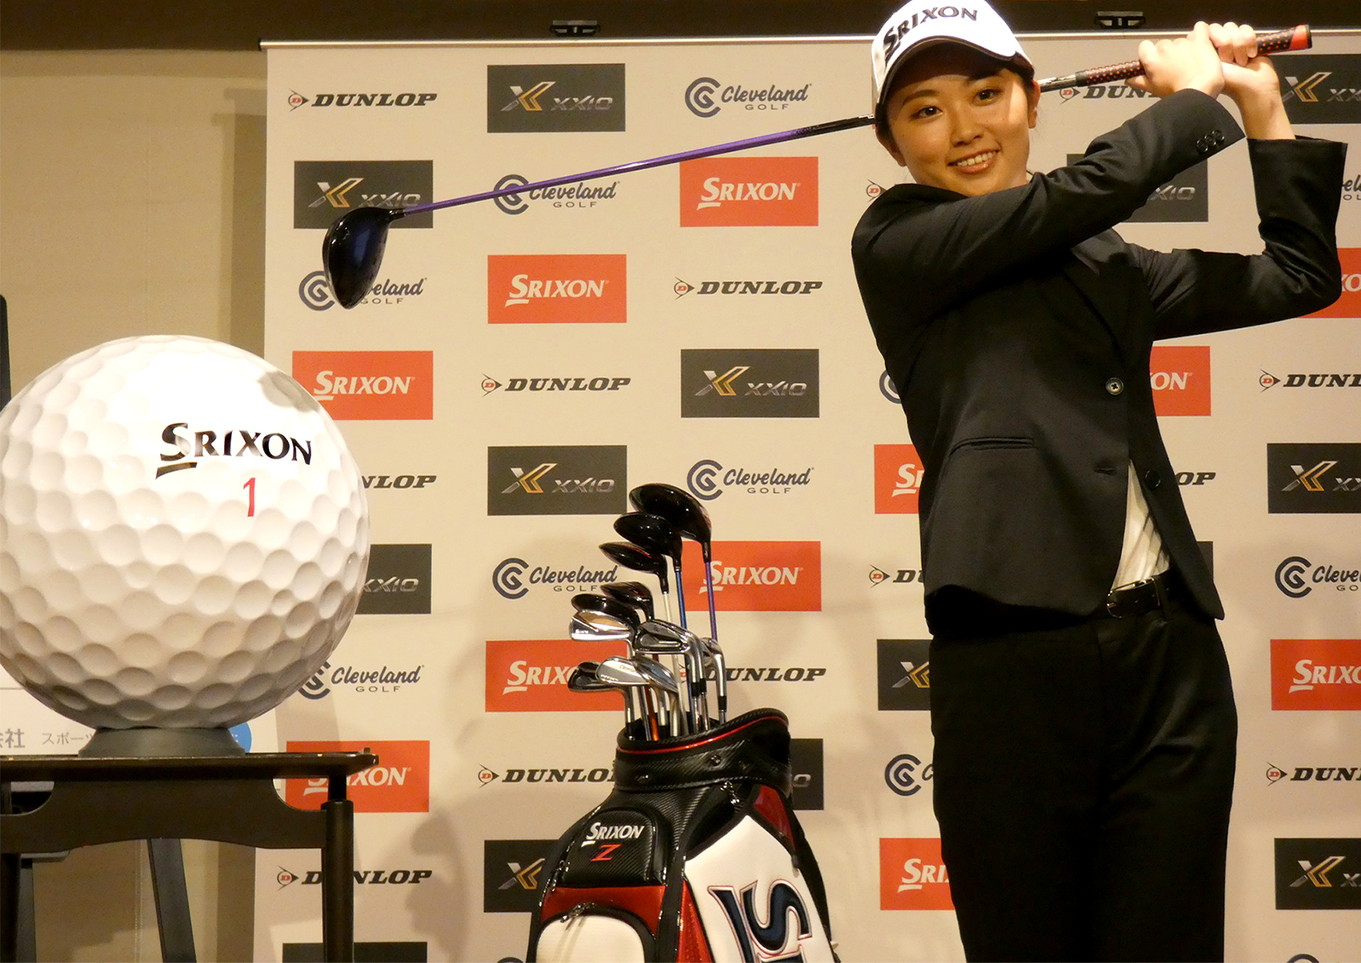 尊敬されるゴルファー をめざして 安田 祐香プロ ダンロップとのゴルフ用品使用契約を発表 最新情報 Dunlop Golfing World